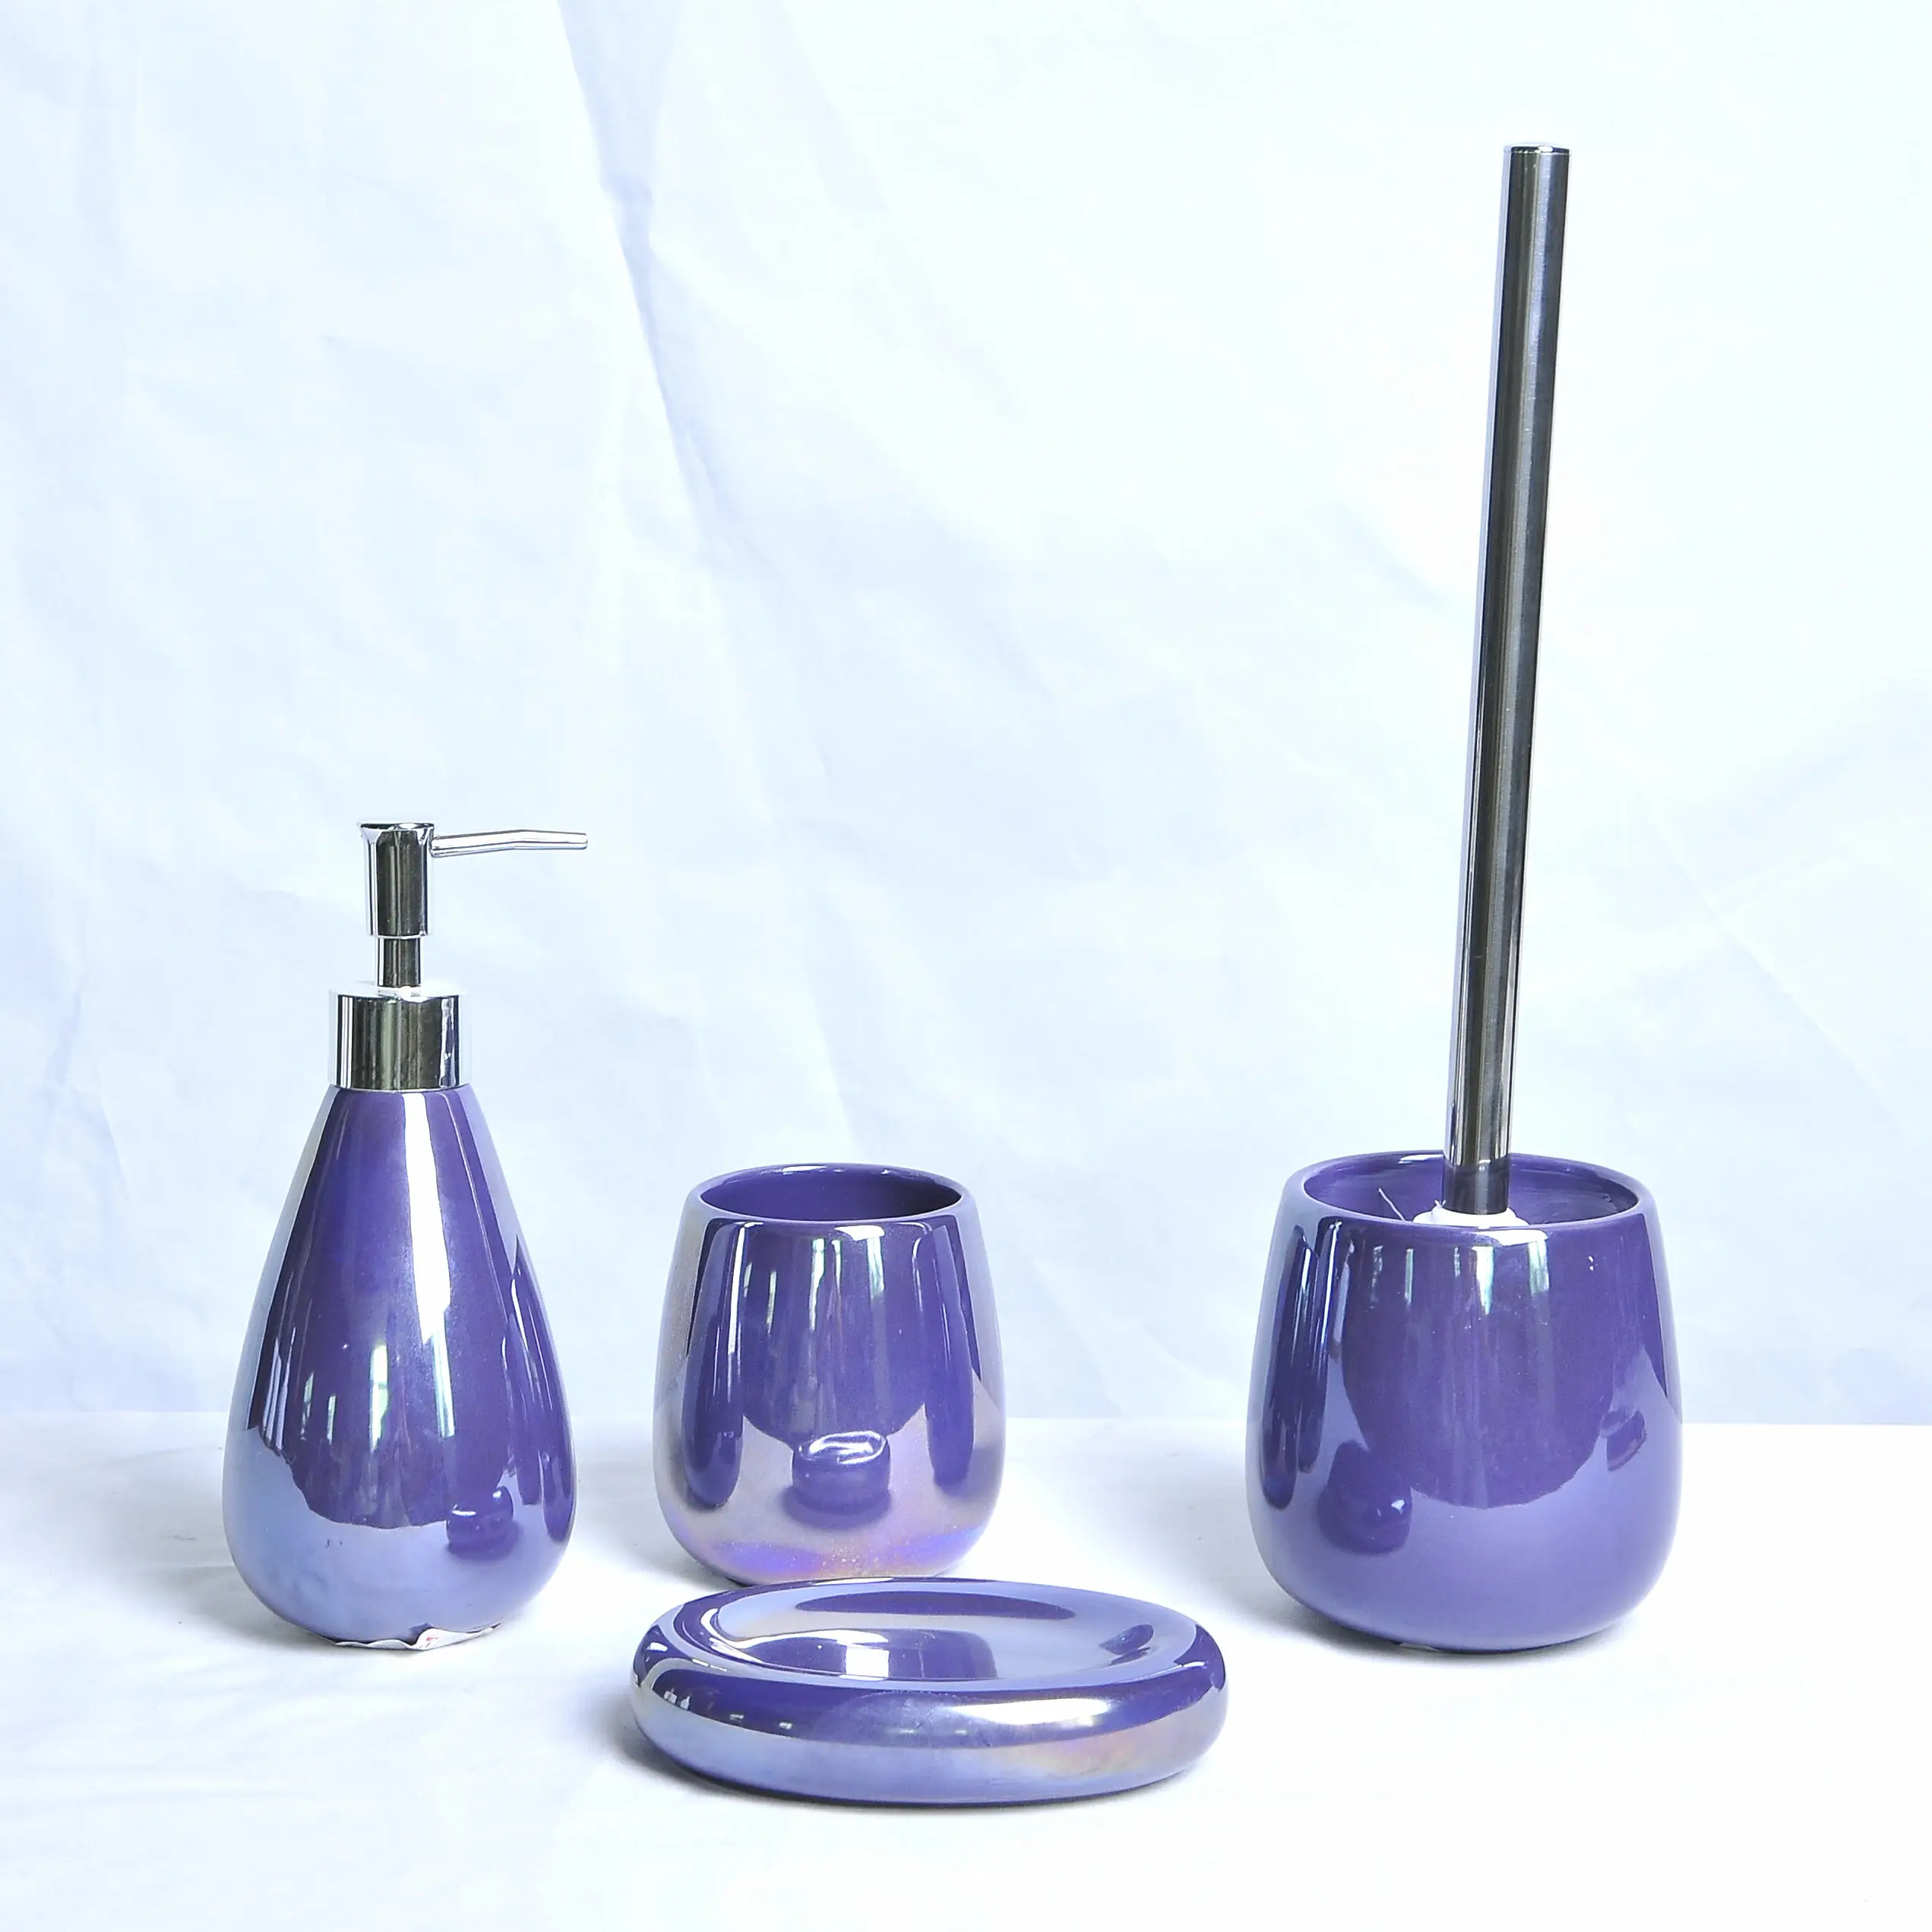 JIA SHUN 4 pièces hôtel salle de bain violet perle vitrée en céramique accessoires de salle de bain ensemble